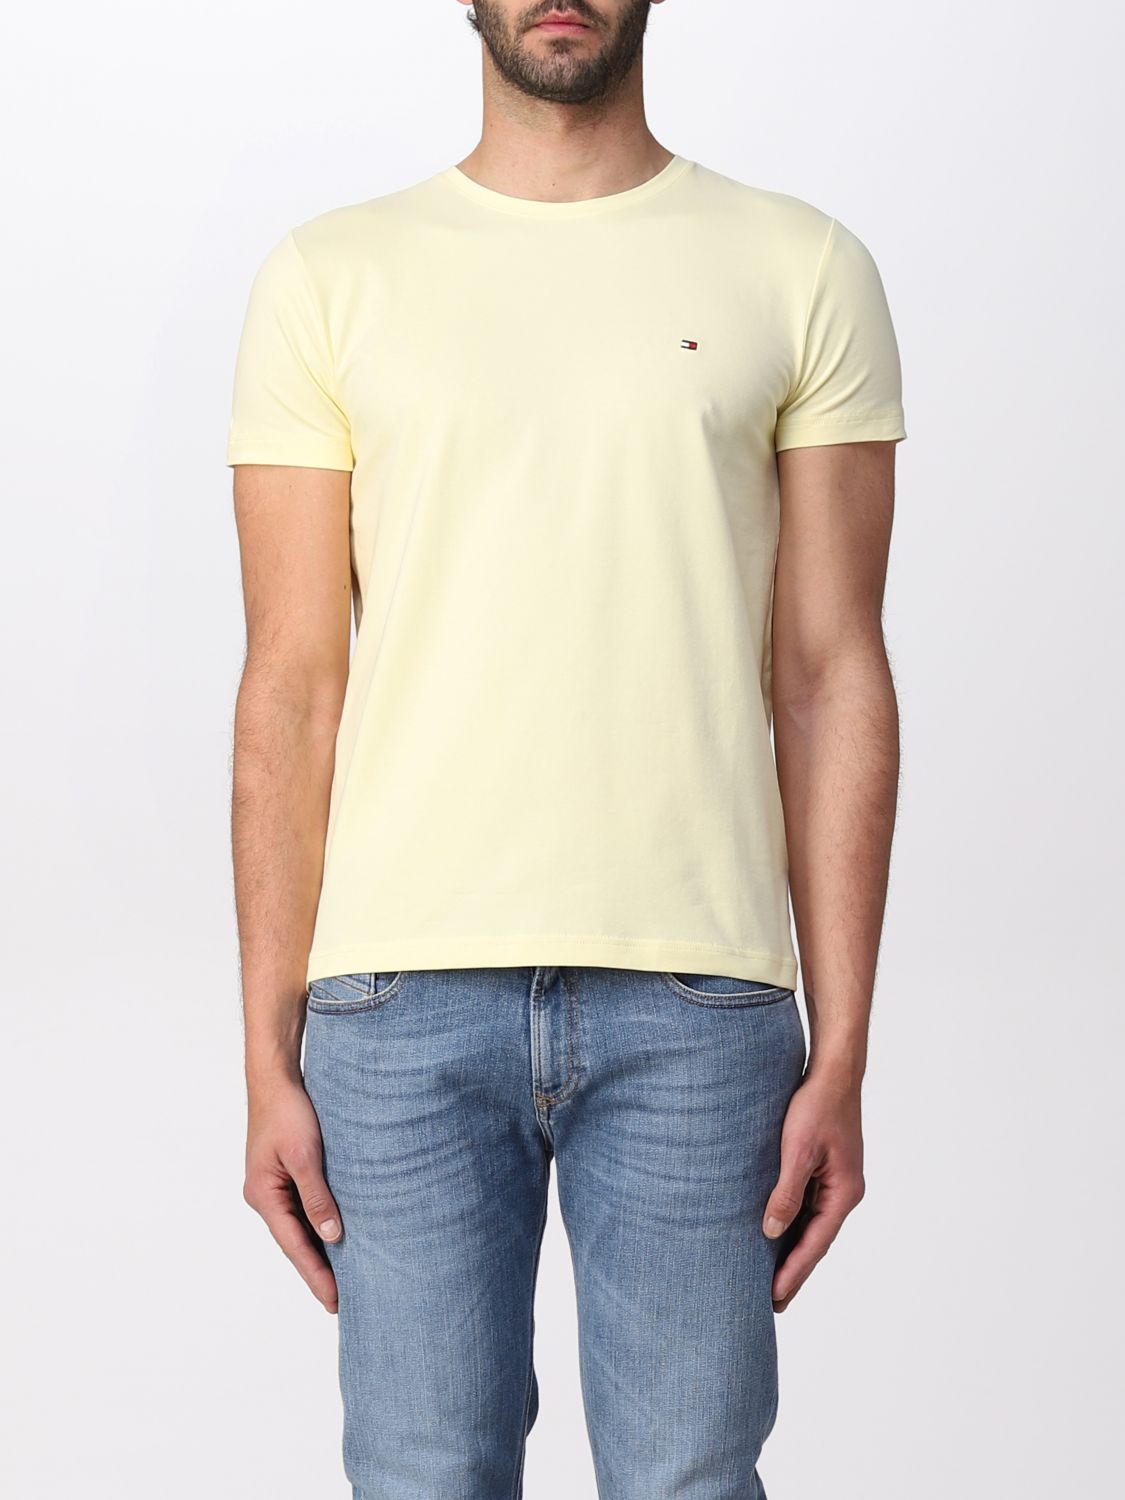 Tommy Hilfiger Outlet: T-shirt men - Lemon Tommy Hilfiger t-shirt MW0MW10800 online GIGLIO.COM